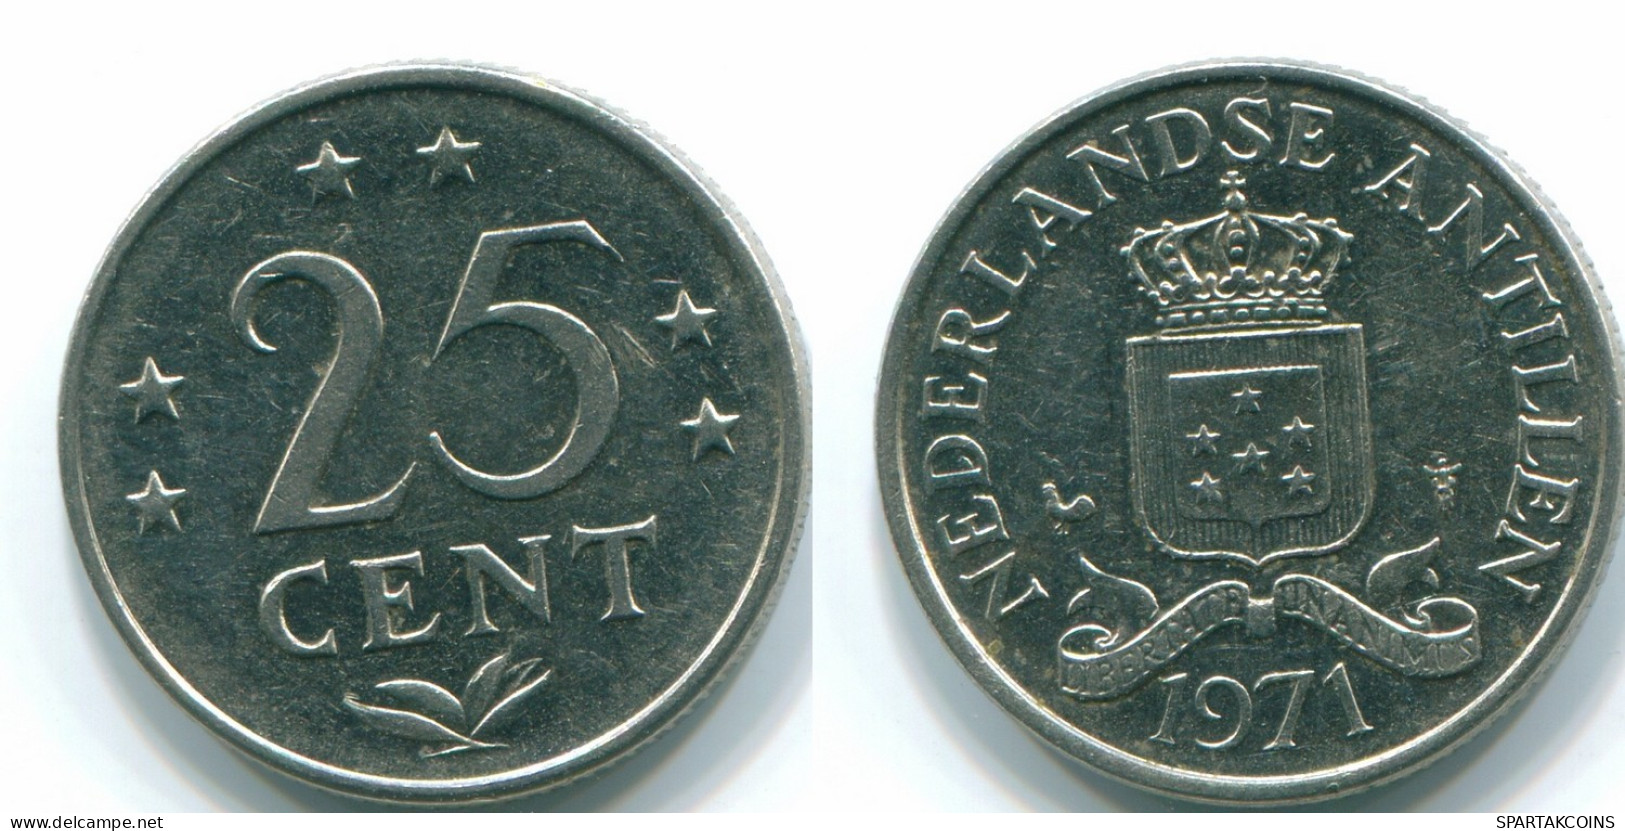 25 CENTS 1971 NETHERLANDS ANTILLES Nickel Colonial Coin #S11511.U.A - Niederländische Antillen